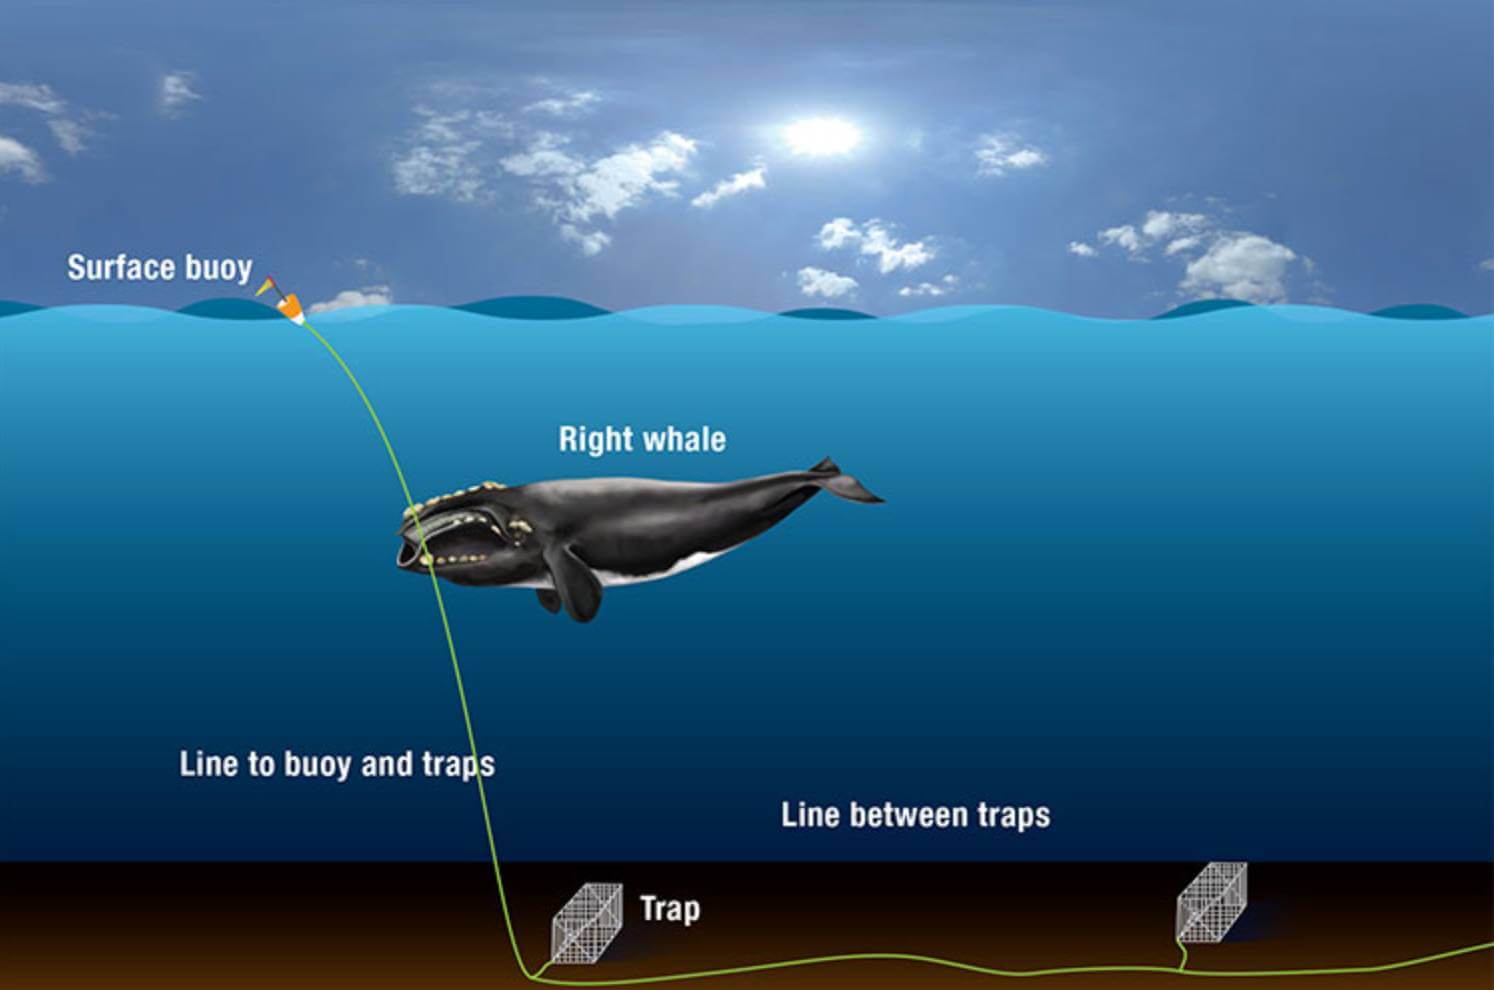 Ilustração de como as baleias se enredam no equipamento de pesca. Crédito da imagem: WHOI Graphic Services, Woods Hole Oceanographic Institution.